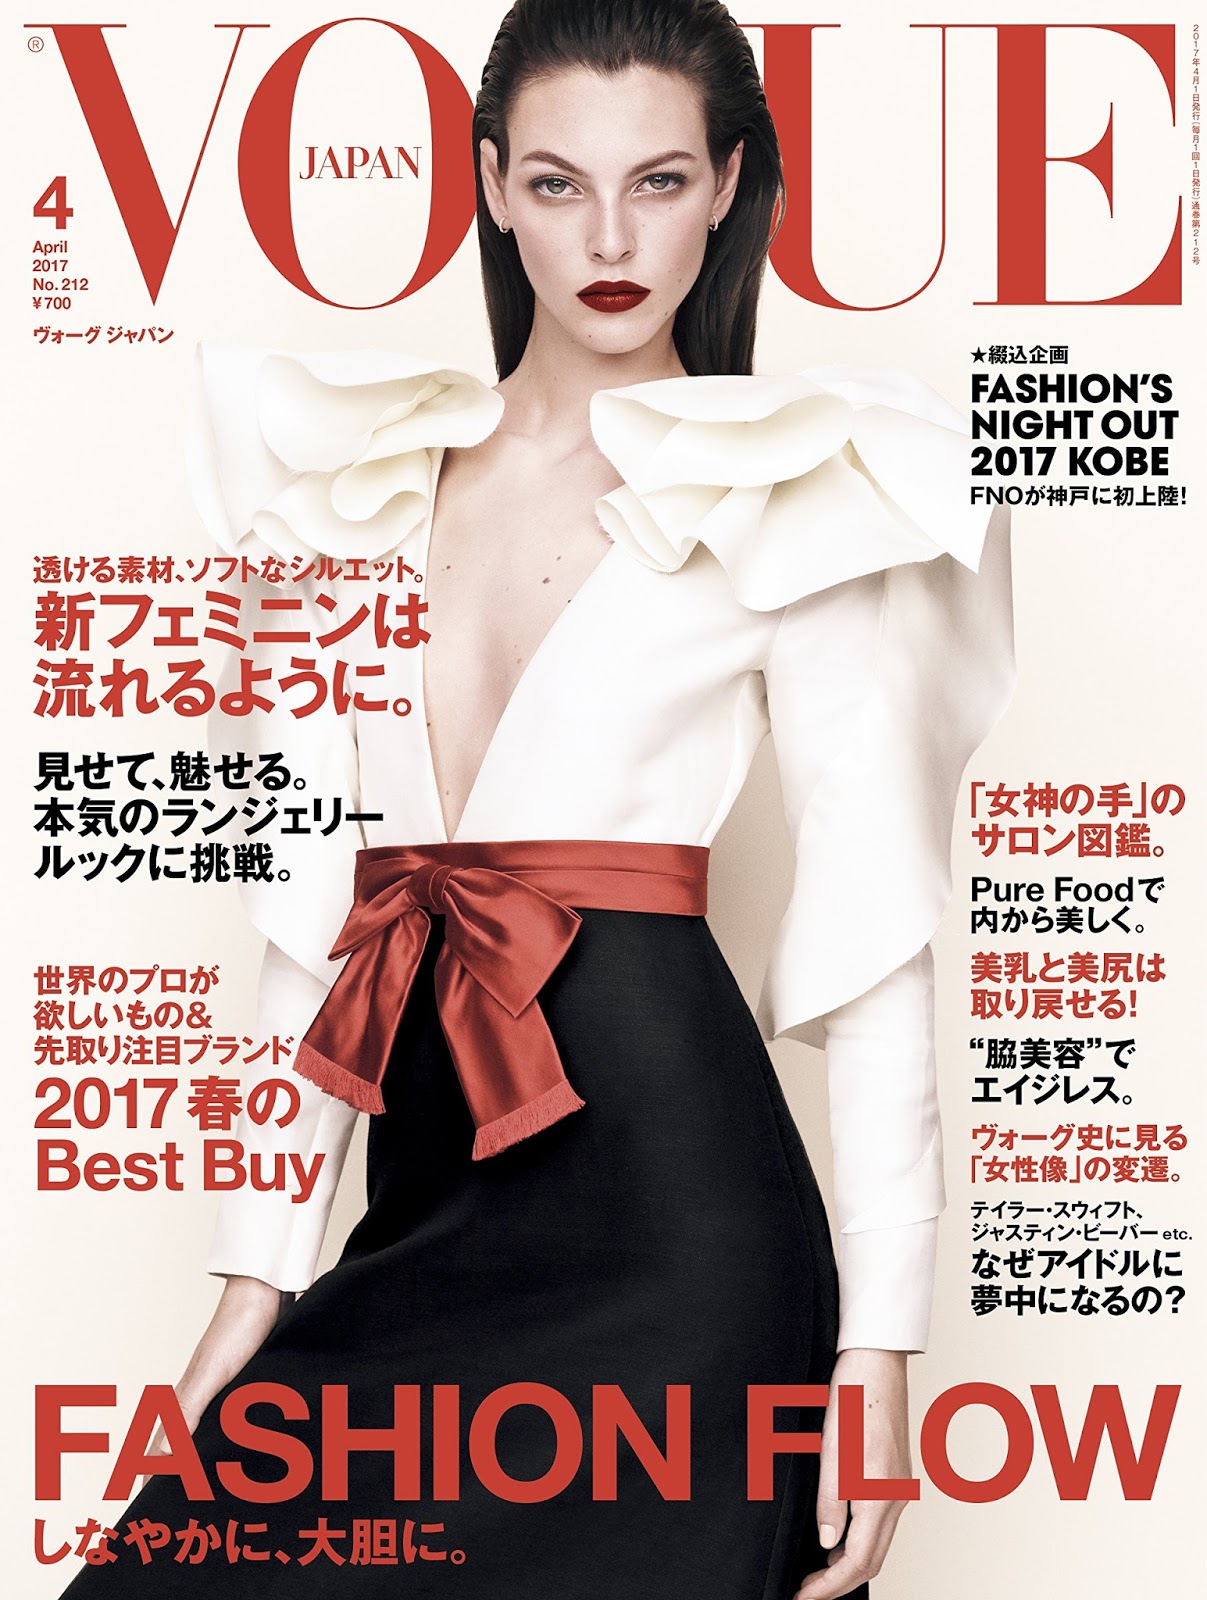 Vogue's Covers: Vogue Japan